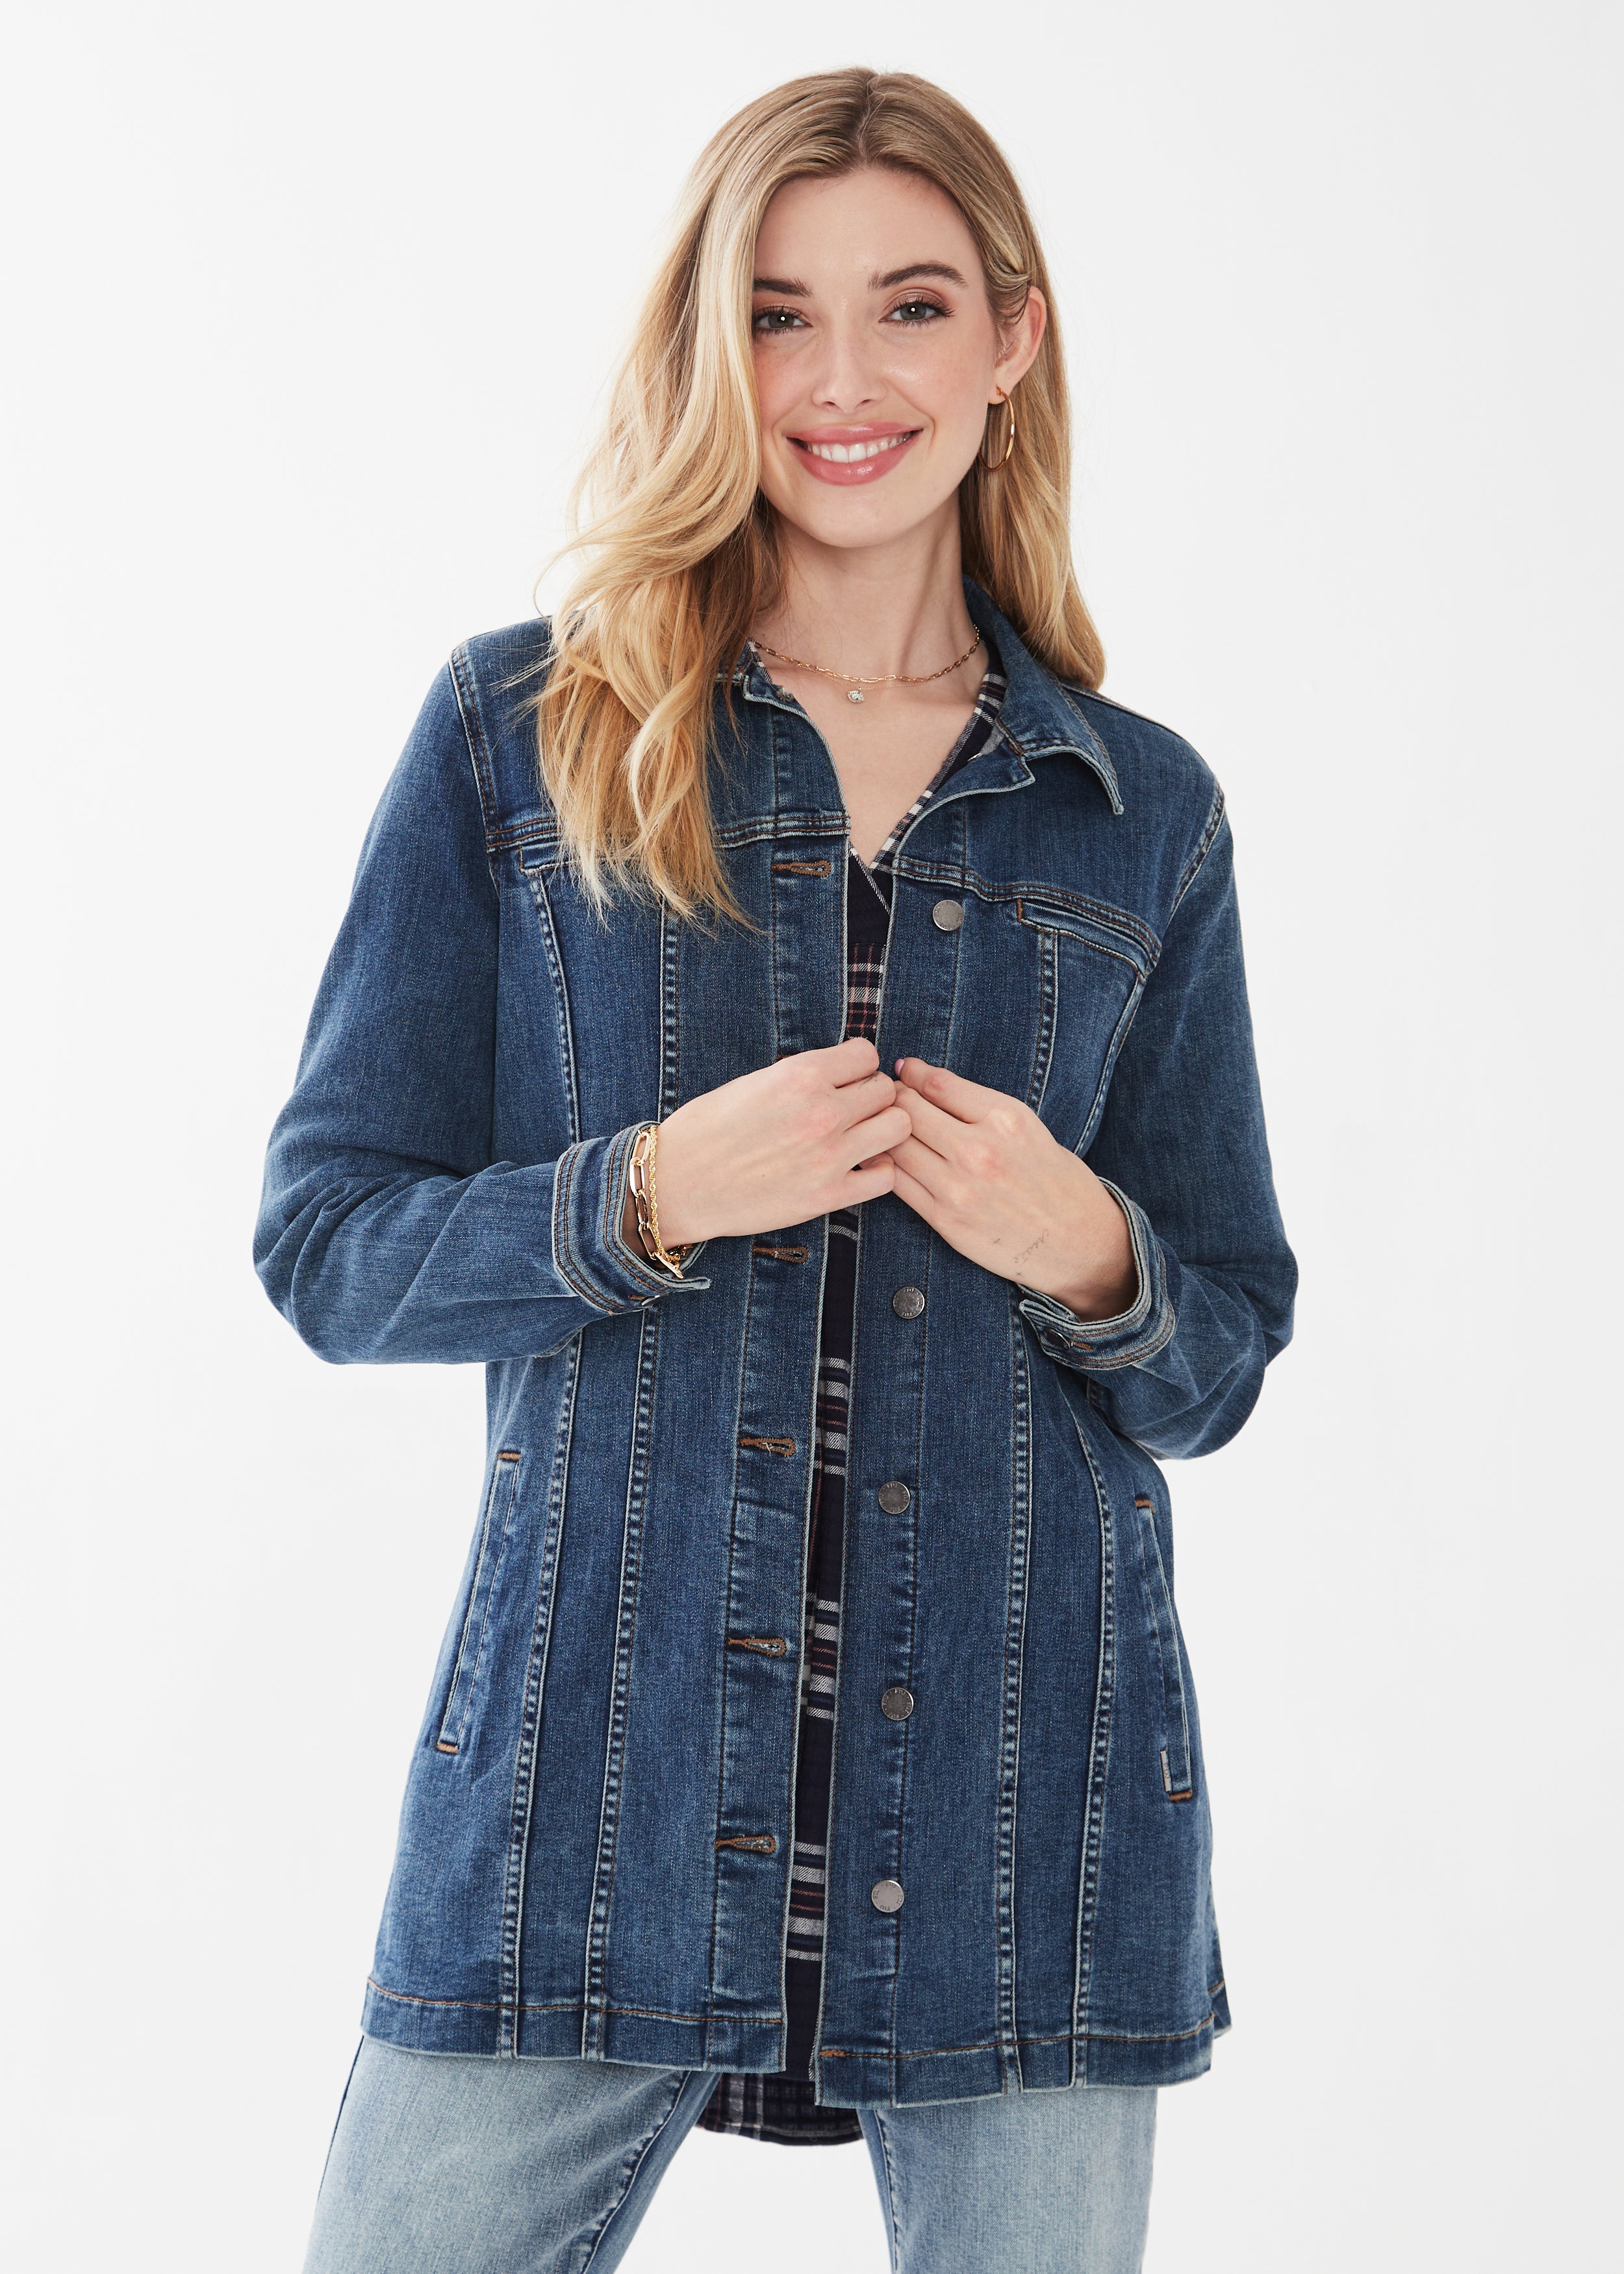 Earl Jeans Denim Jacket Womens XL As Seen on Gilmore Girls Long Sleeve Blue  | eBay